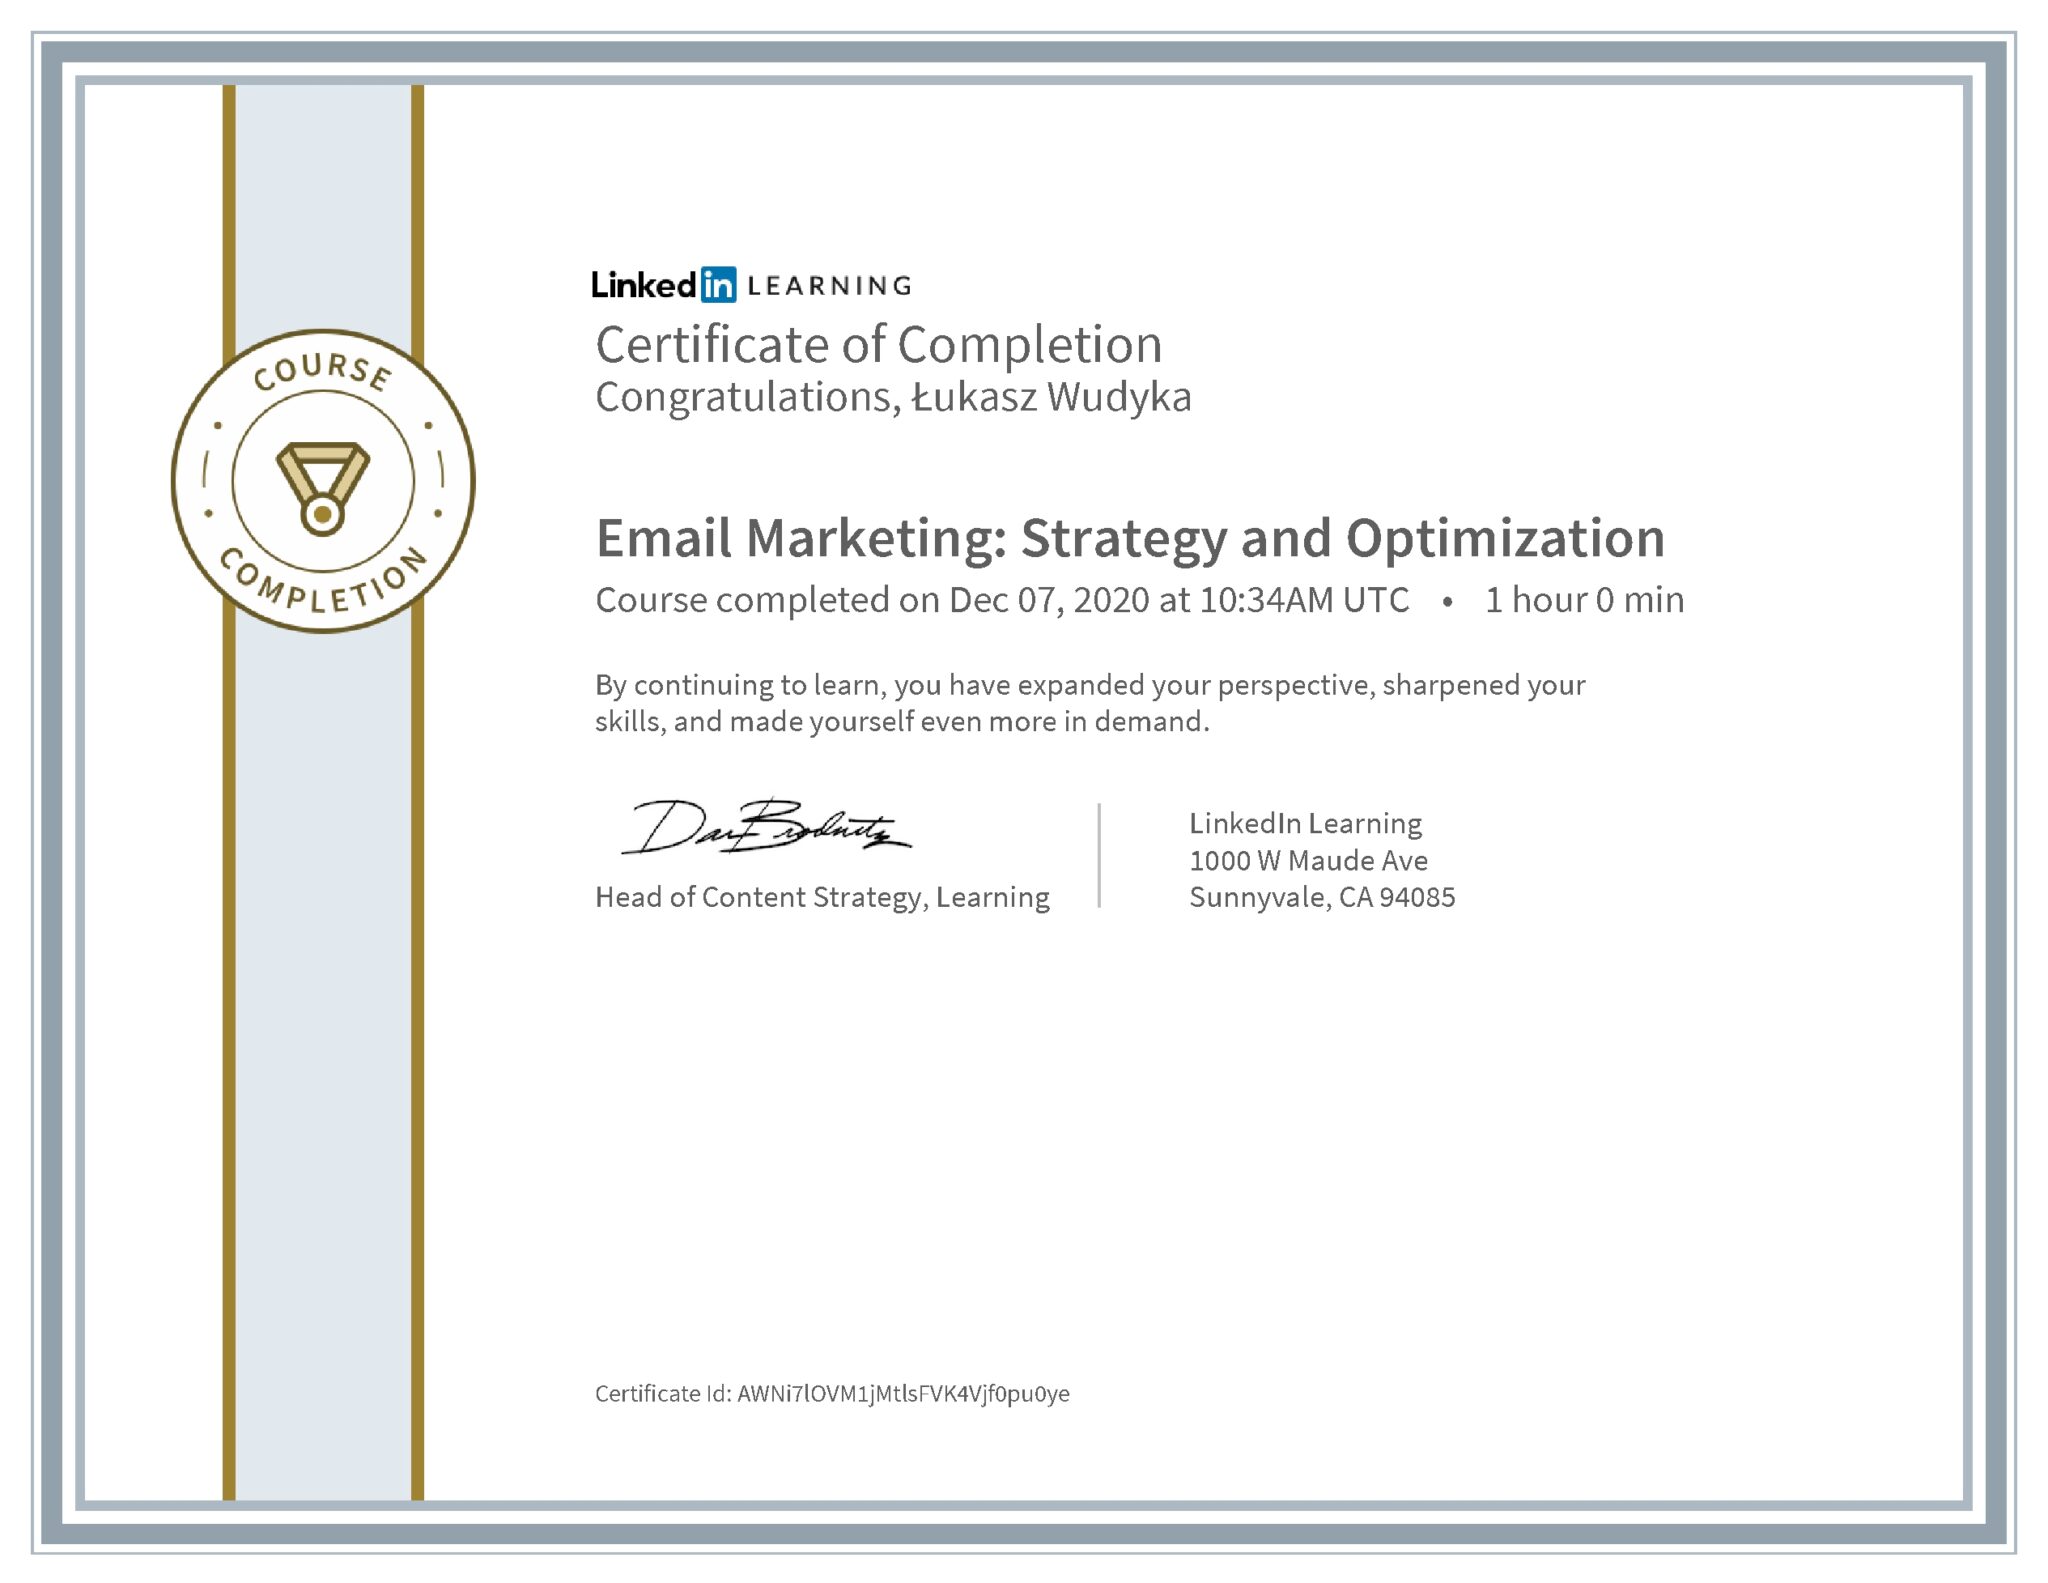 Łukasz Wudyka certyfikat LinkedIn Email Marketing: Strategy and Optimization